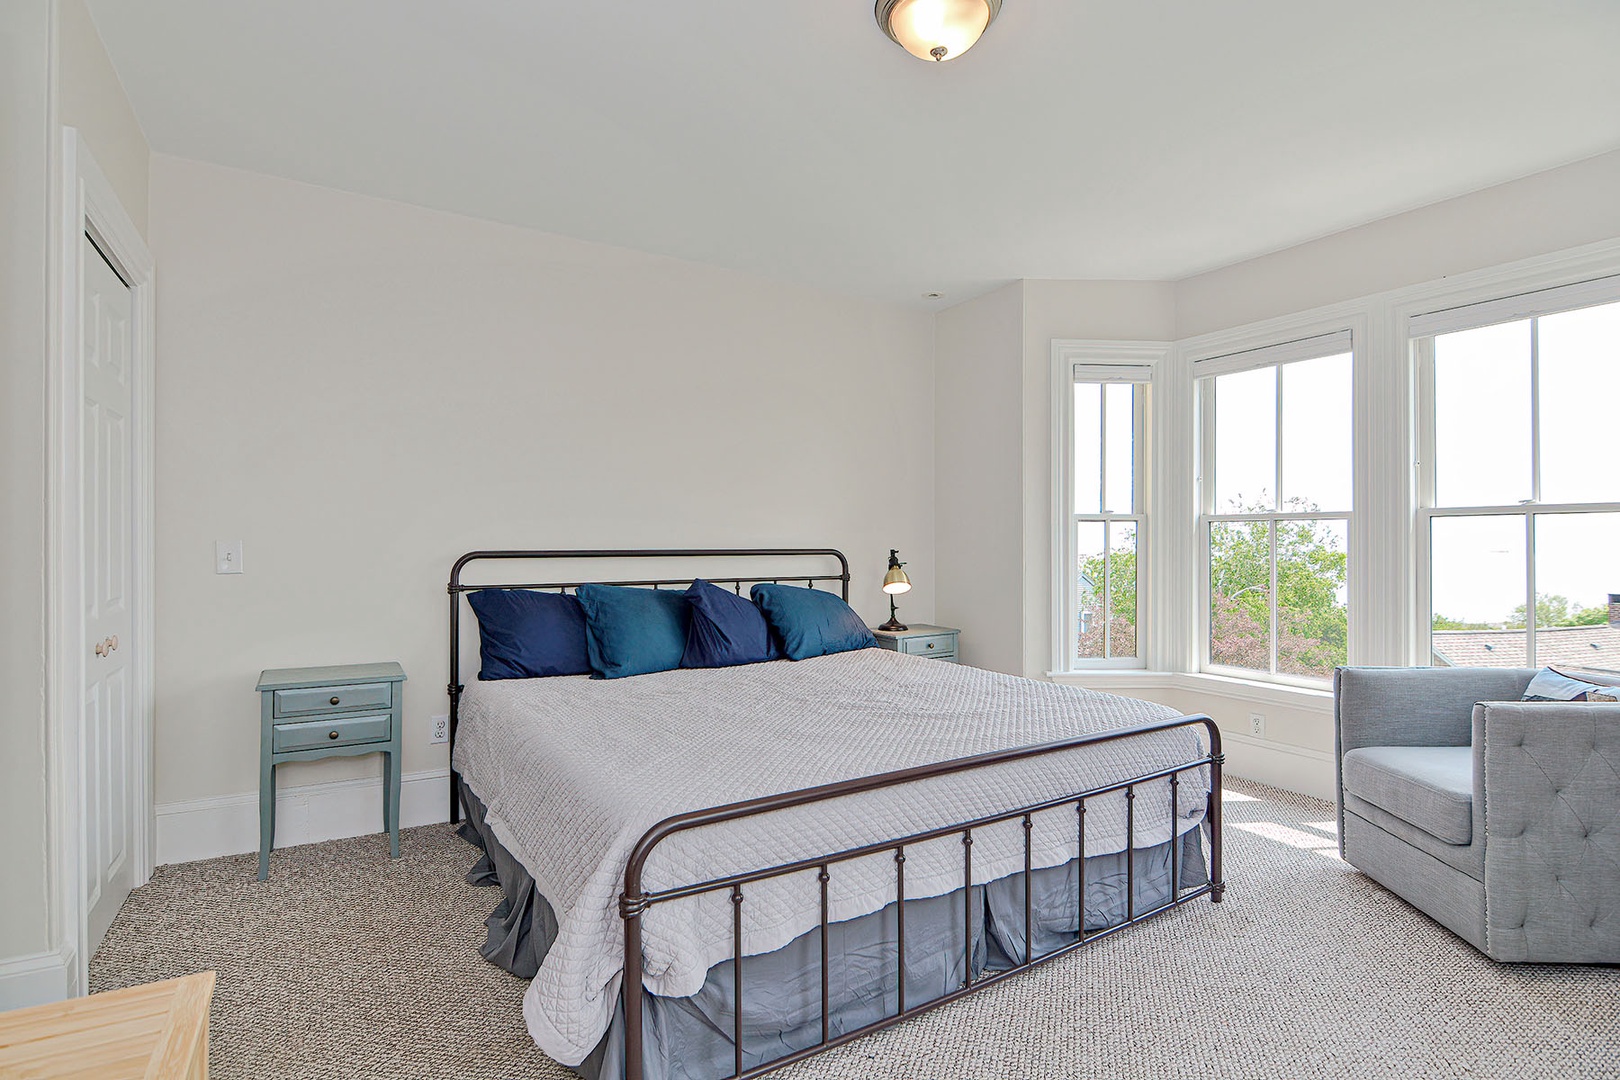 King bedroom with ocean views